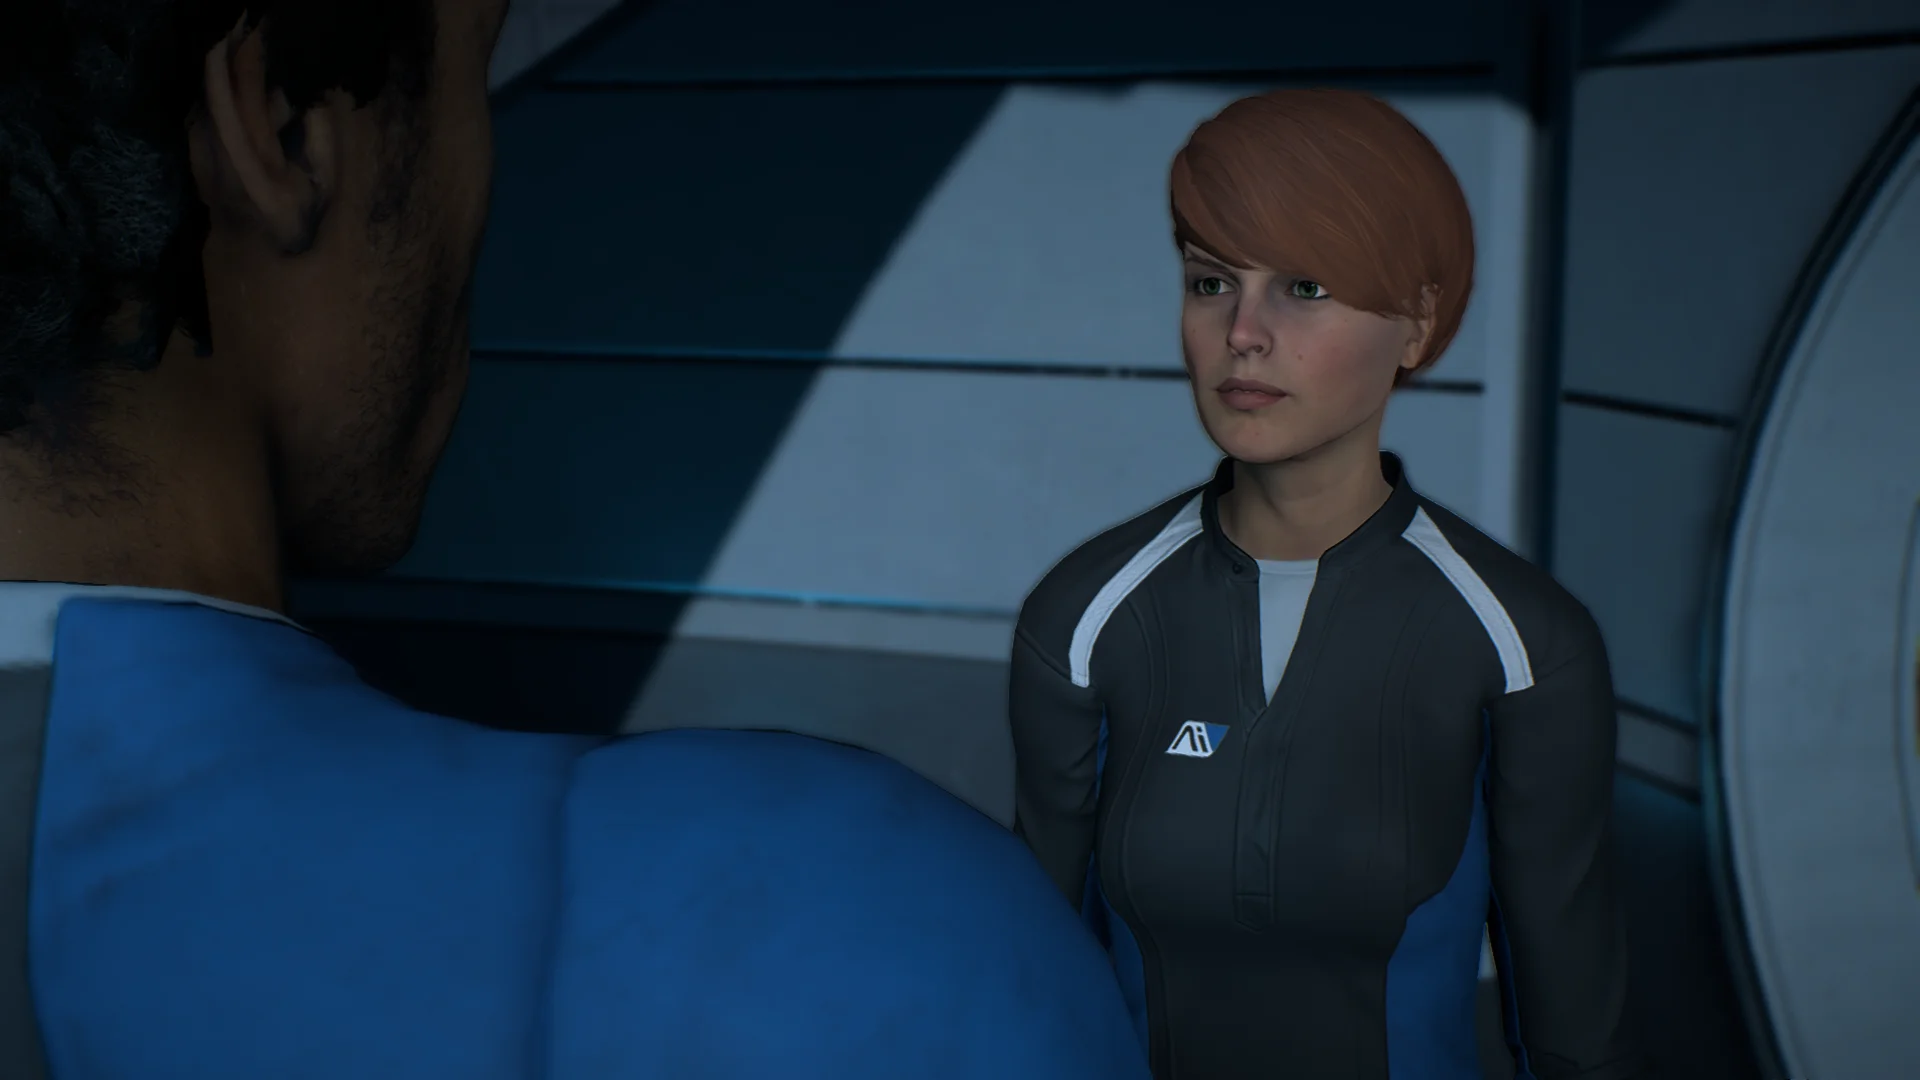 Патч 1.05 для Mass Effect: Andromeda исправил ужасные глаза персонажей - фото 5